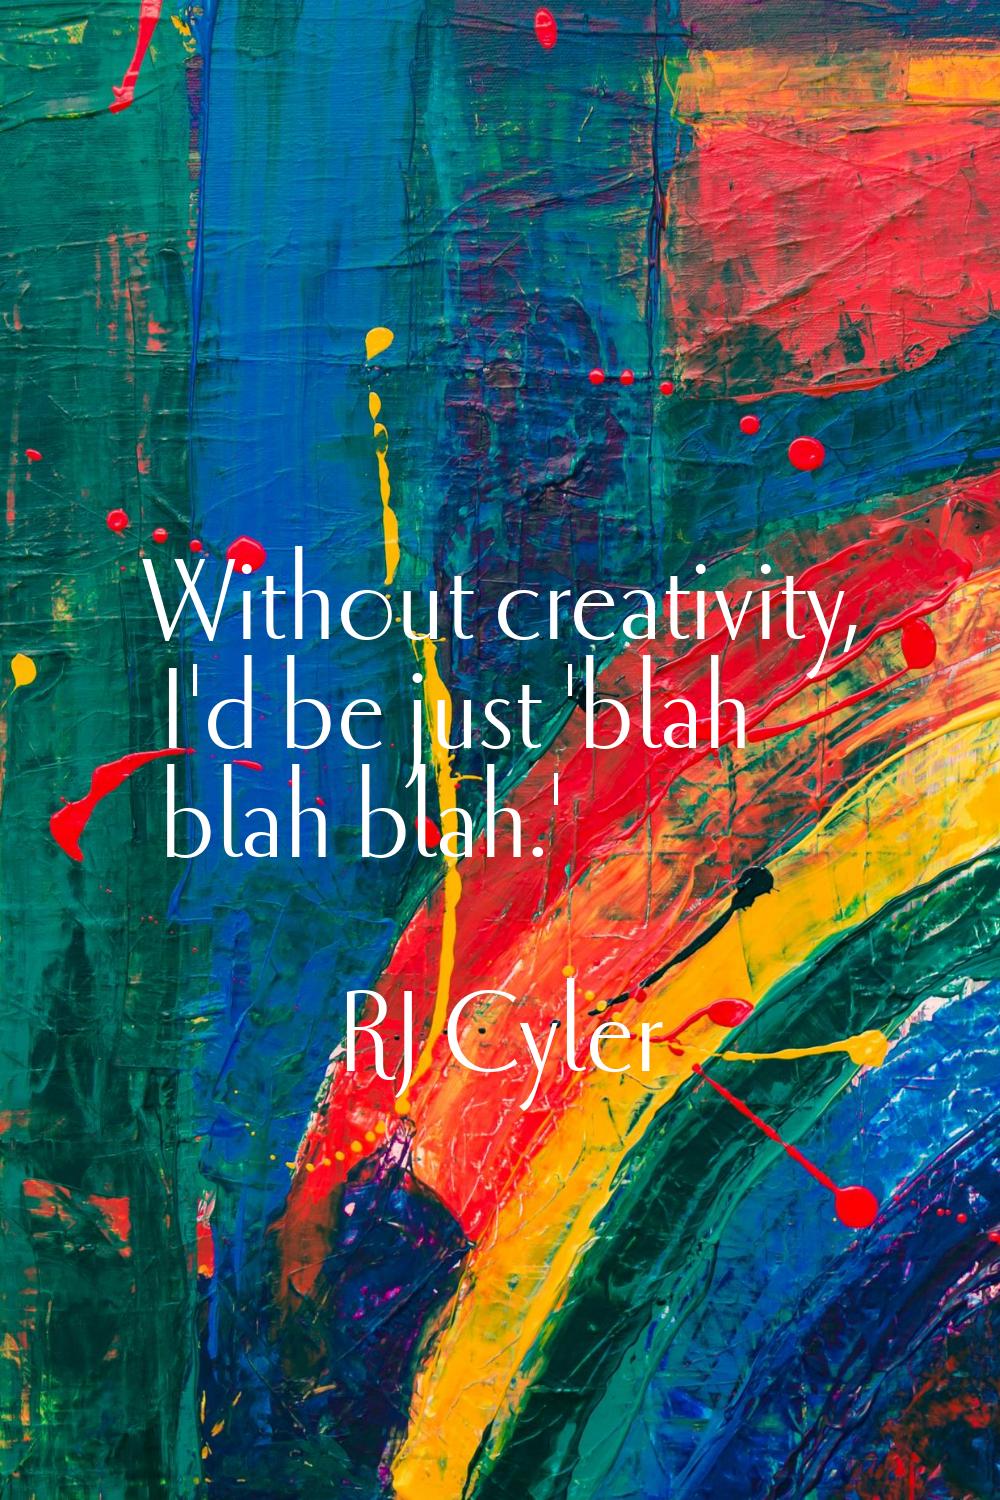 Without creativity, I'd be just 'blah blah blah.'